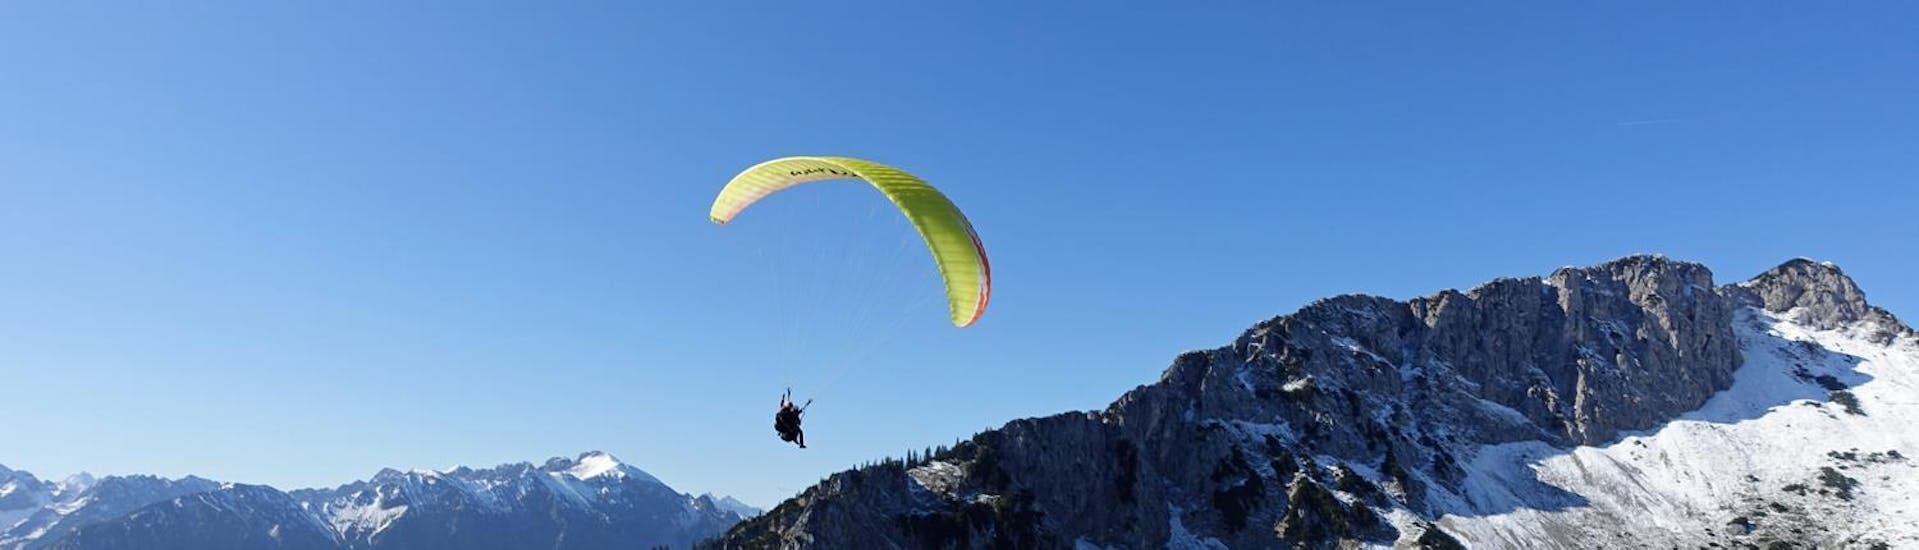 Tijdens de tandemparagliding "Long Distance Flight" in Allgäu en Tirol zweeft een paraglider van FlyTeam hoog boven de bergen.